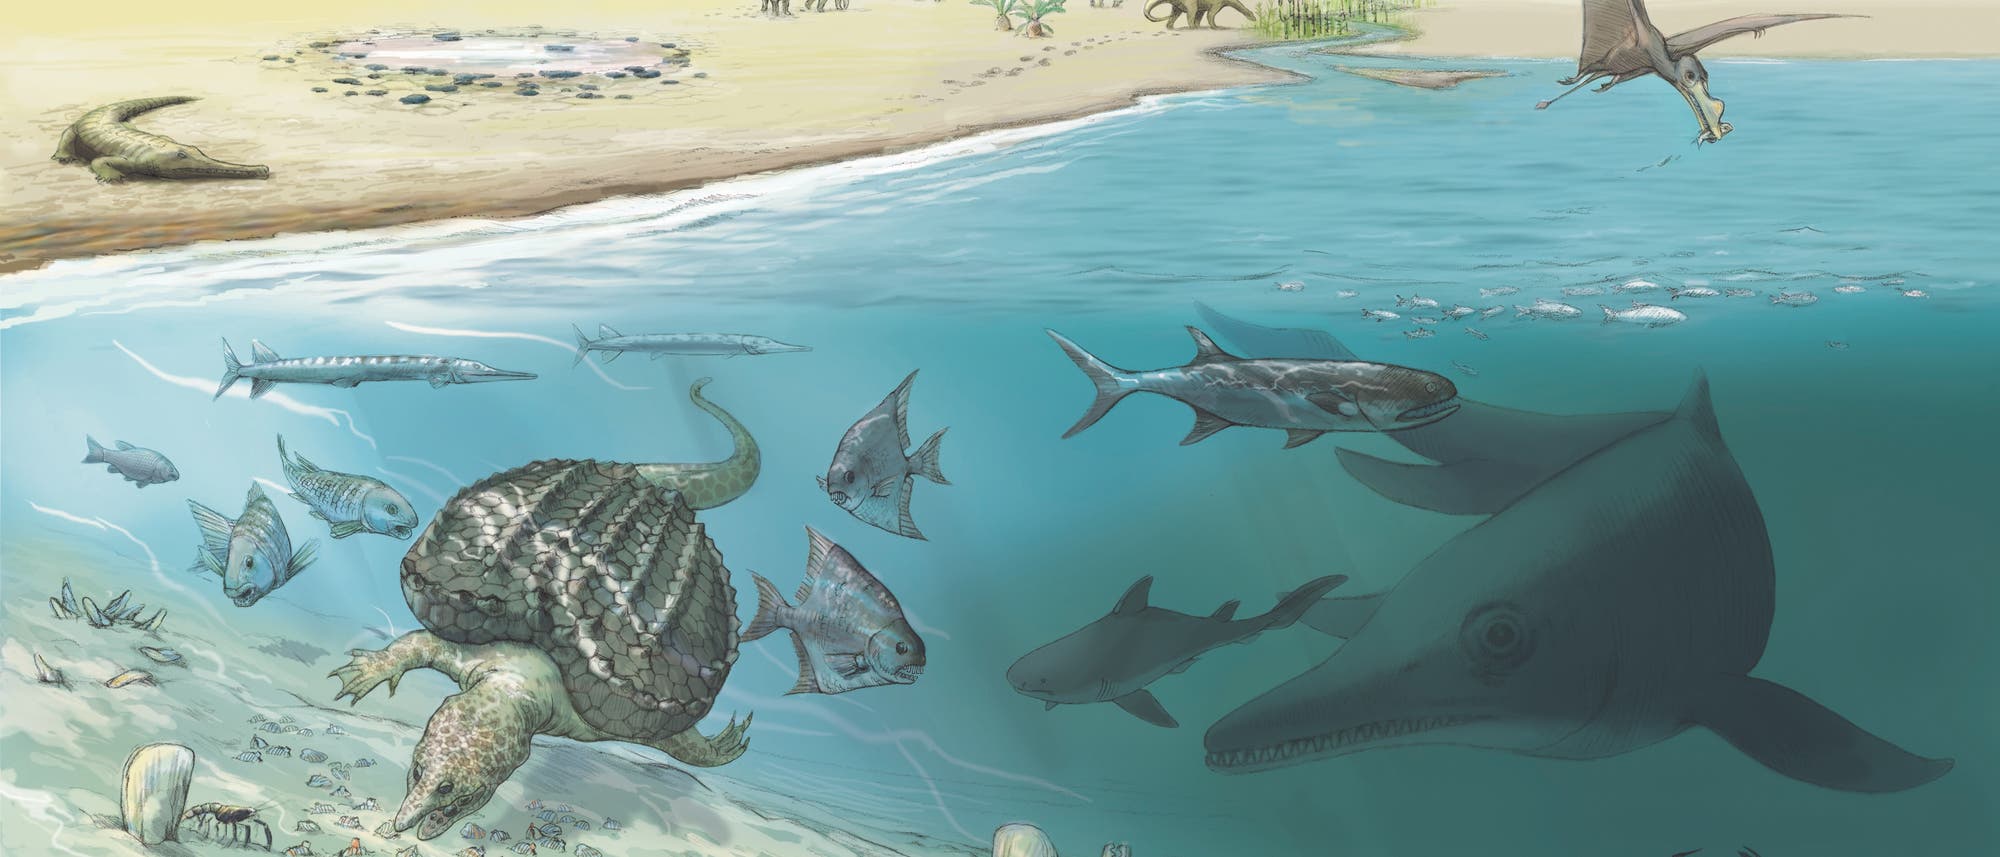 Meereswelt vor 250 Millionen Jahren mit walgroßem Fischsaurier